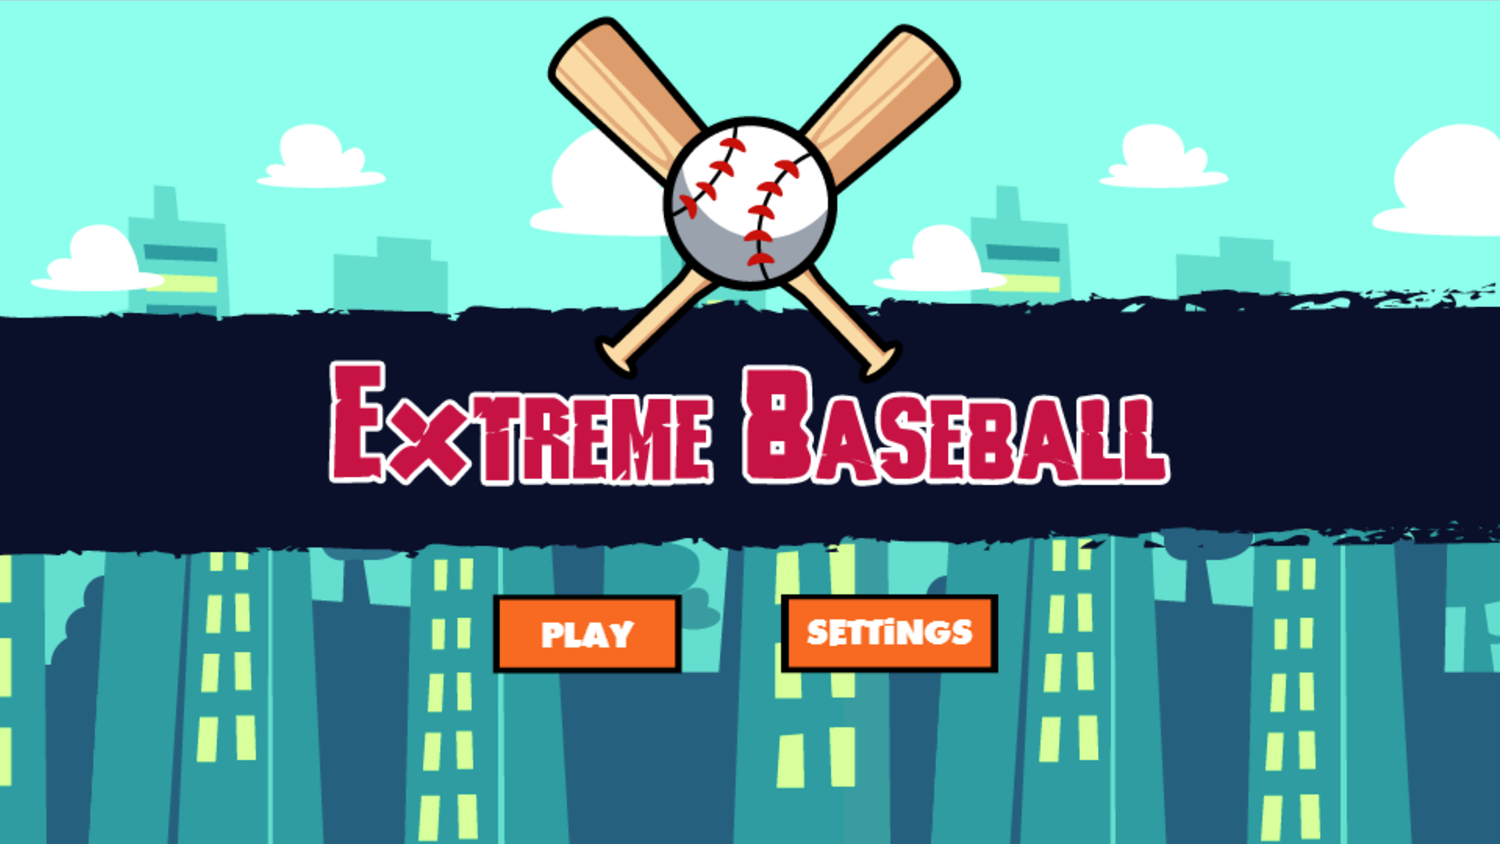 Extreme Baseball Game Welcome Screen Screenshot.